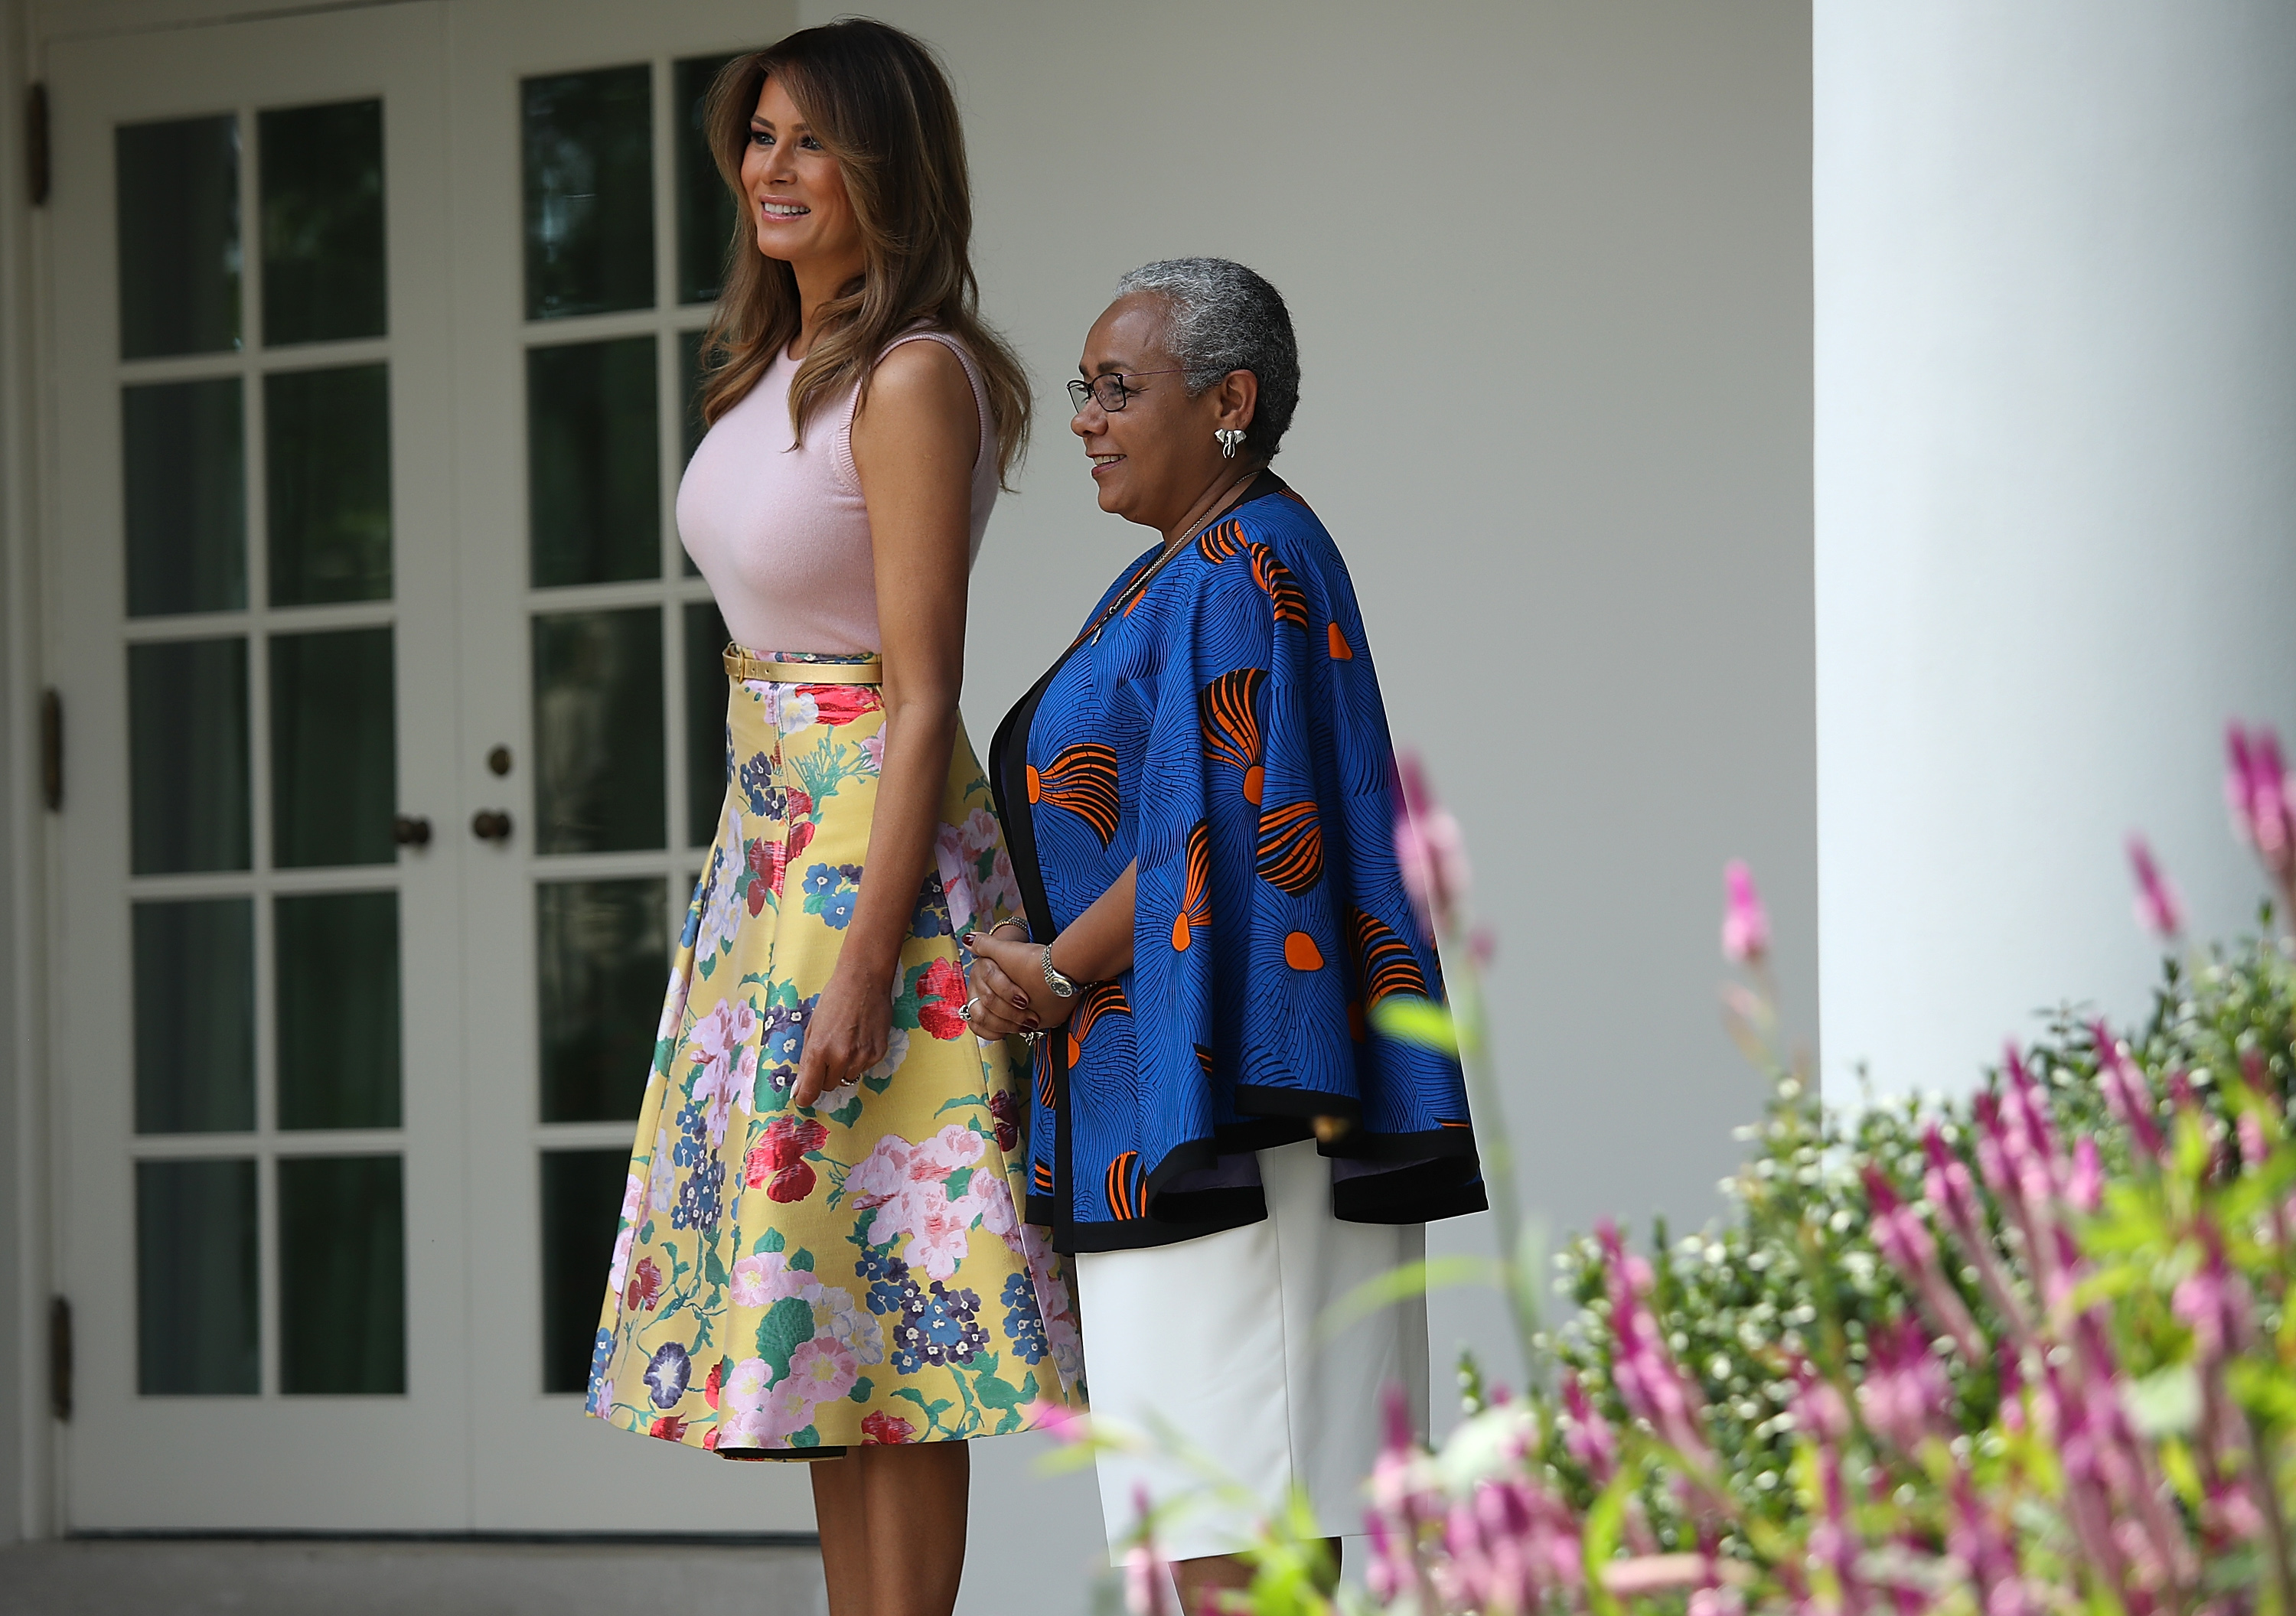 Първата дама на САЩ винаги е давана като добър пример за модерна и елегантна жена, която умело съчетава цветове и стилове. Съпругата на Доналд Тръмп не за първи път влиза в полезрението на модните критици със своите смели комбинации. Този път с една пола и нейната цена. Доналд и Мелания Тръмп посрещнаха в Белия дом президента на Кения Ухуру Кенята и неговата съпруга. Първата дама на САЩ бе заложила на любимия си тип поли с висока талия и във флорални мотиви. Прави впечатление, че през лято 2018 г. Мелания доста често залага на подобен тип поли и рокли, когато посреща важни гости в Белия дом. Полата на Мелания е на марката Valentino, чиято цена е близо 4 хил. долара, като в момента тя е намалена на 1185 долара.